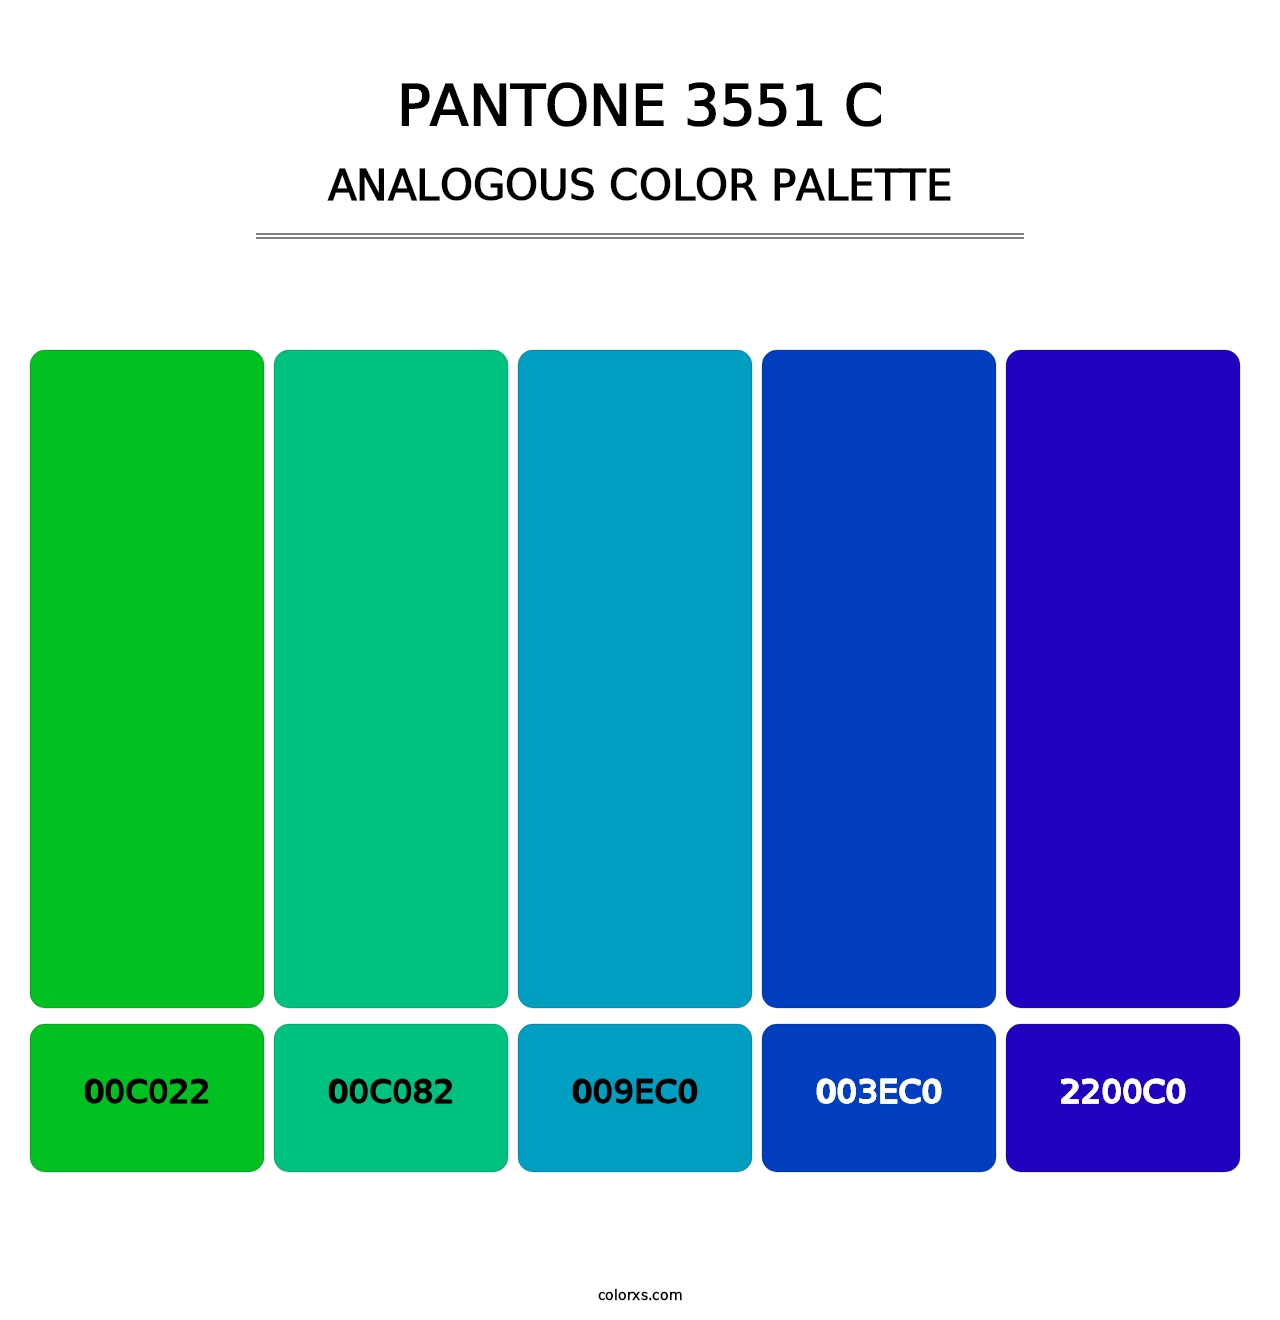 PANTONE 3551 C - Analogous Color Palette